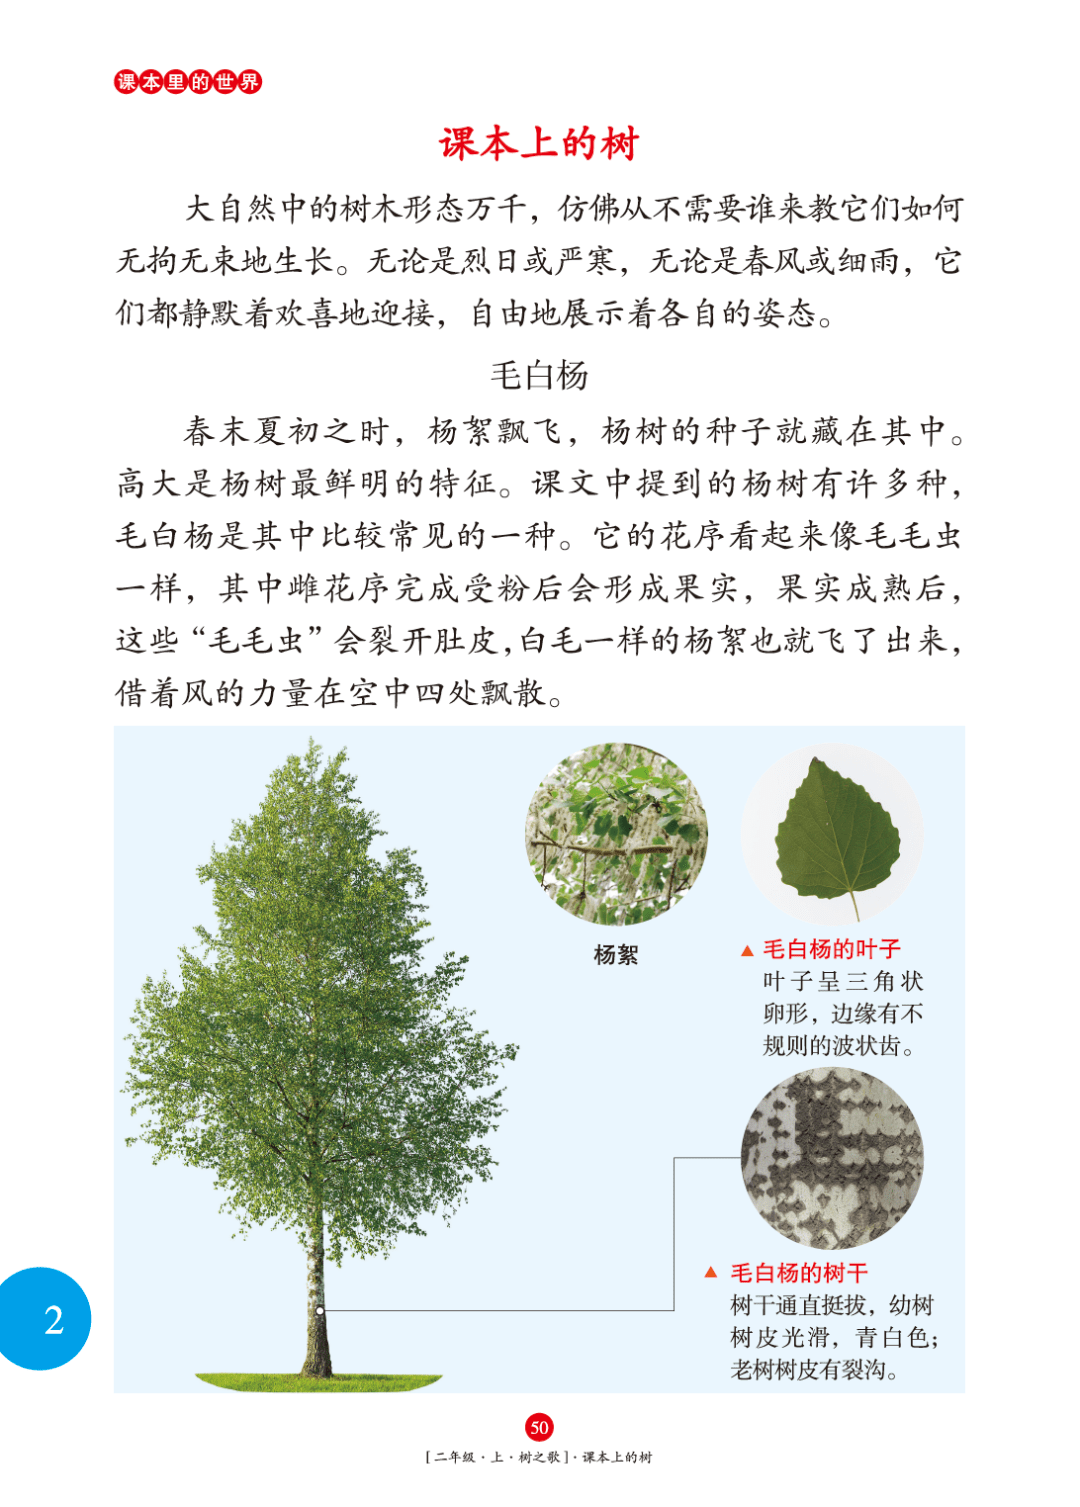 要突出高,榕树突出壮,梧桐树重点介绍树叶的形状……贴着教材进行介绍